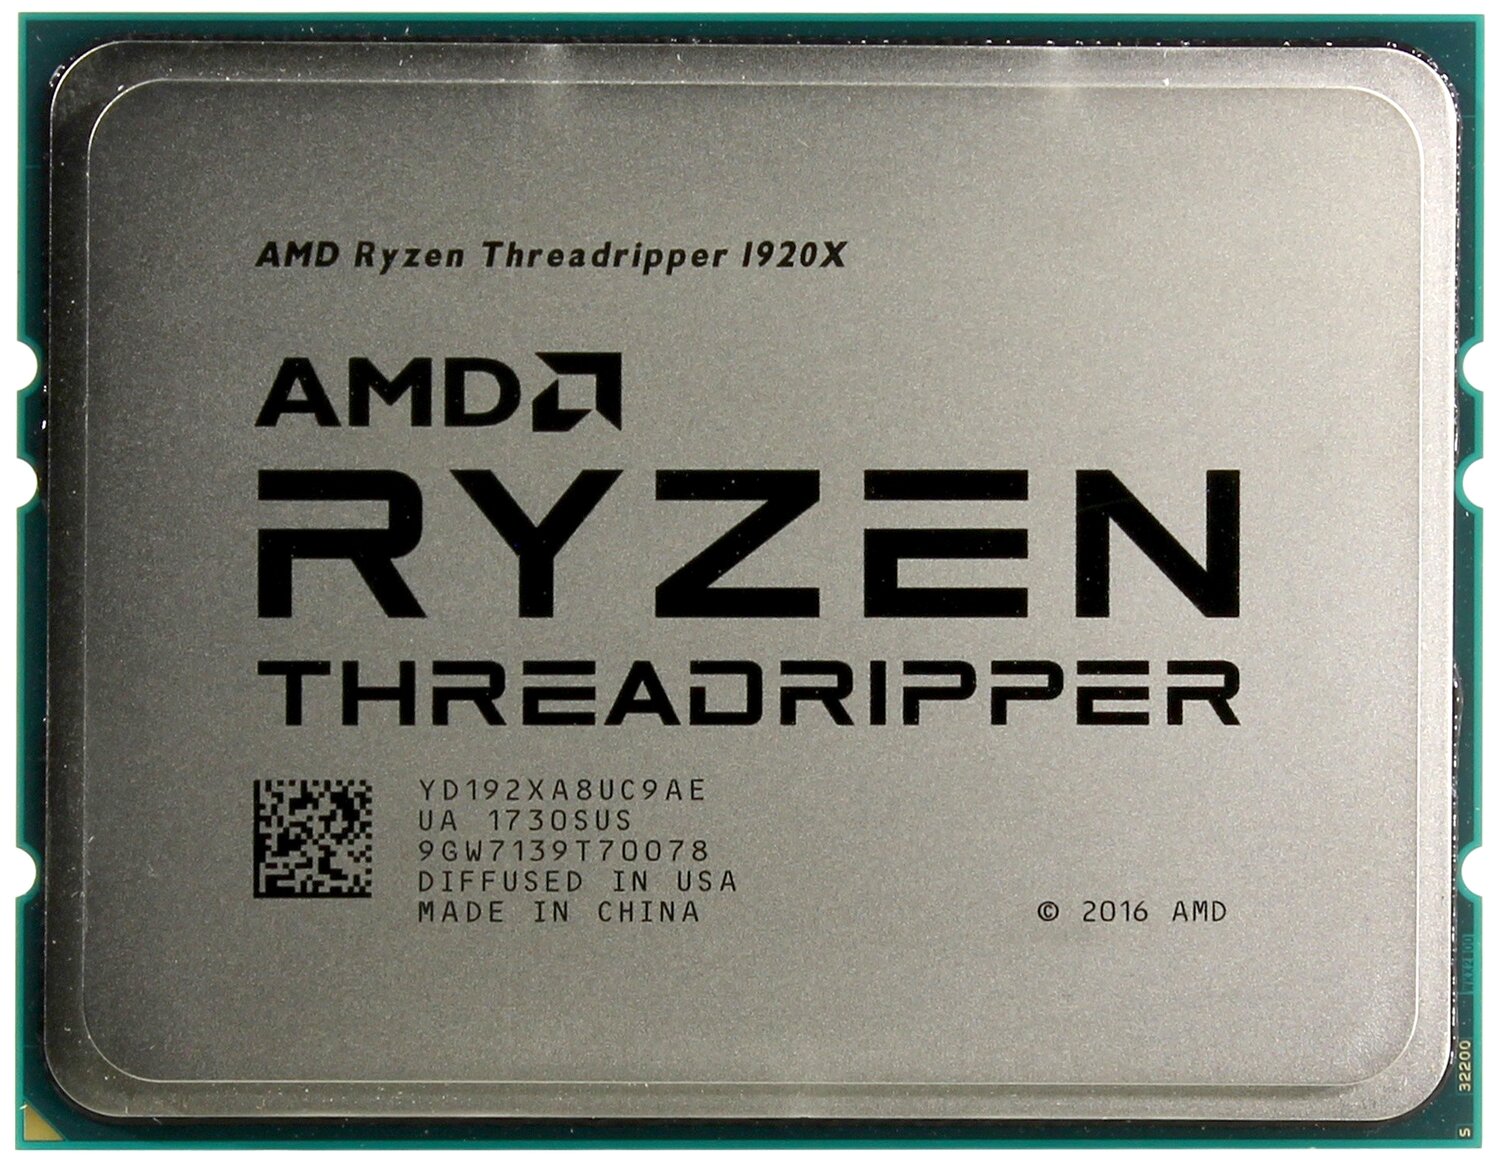  AMD Ryzen Threadripper 1920X YD192XA8UC9AE/(3.5GHz)  sTR4 L3  32MB/OEM